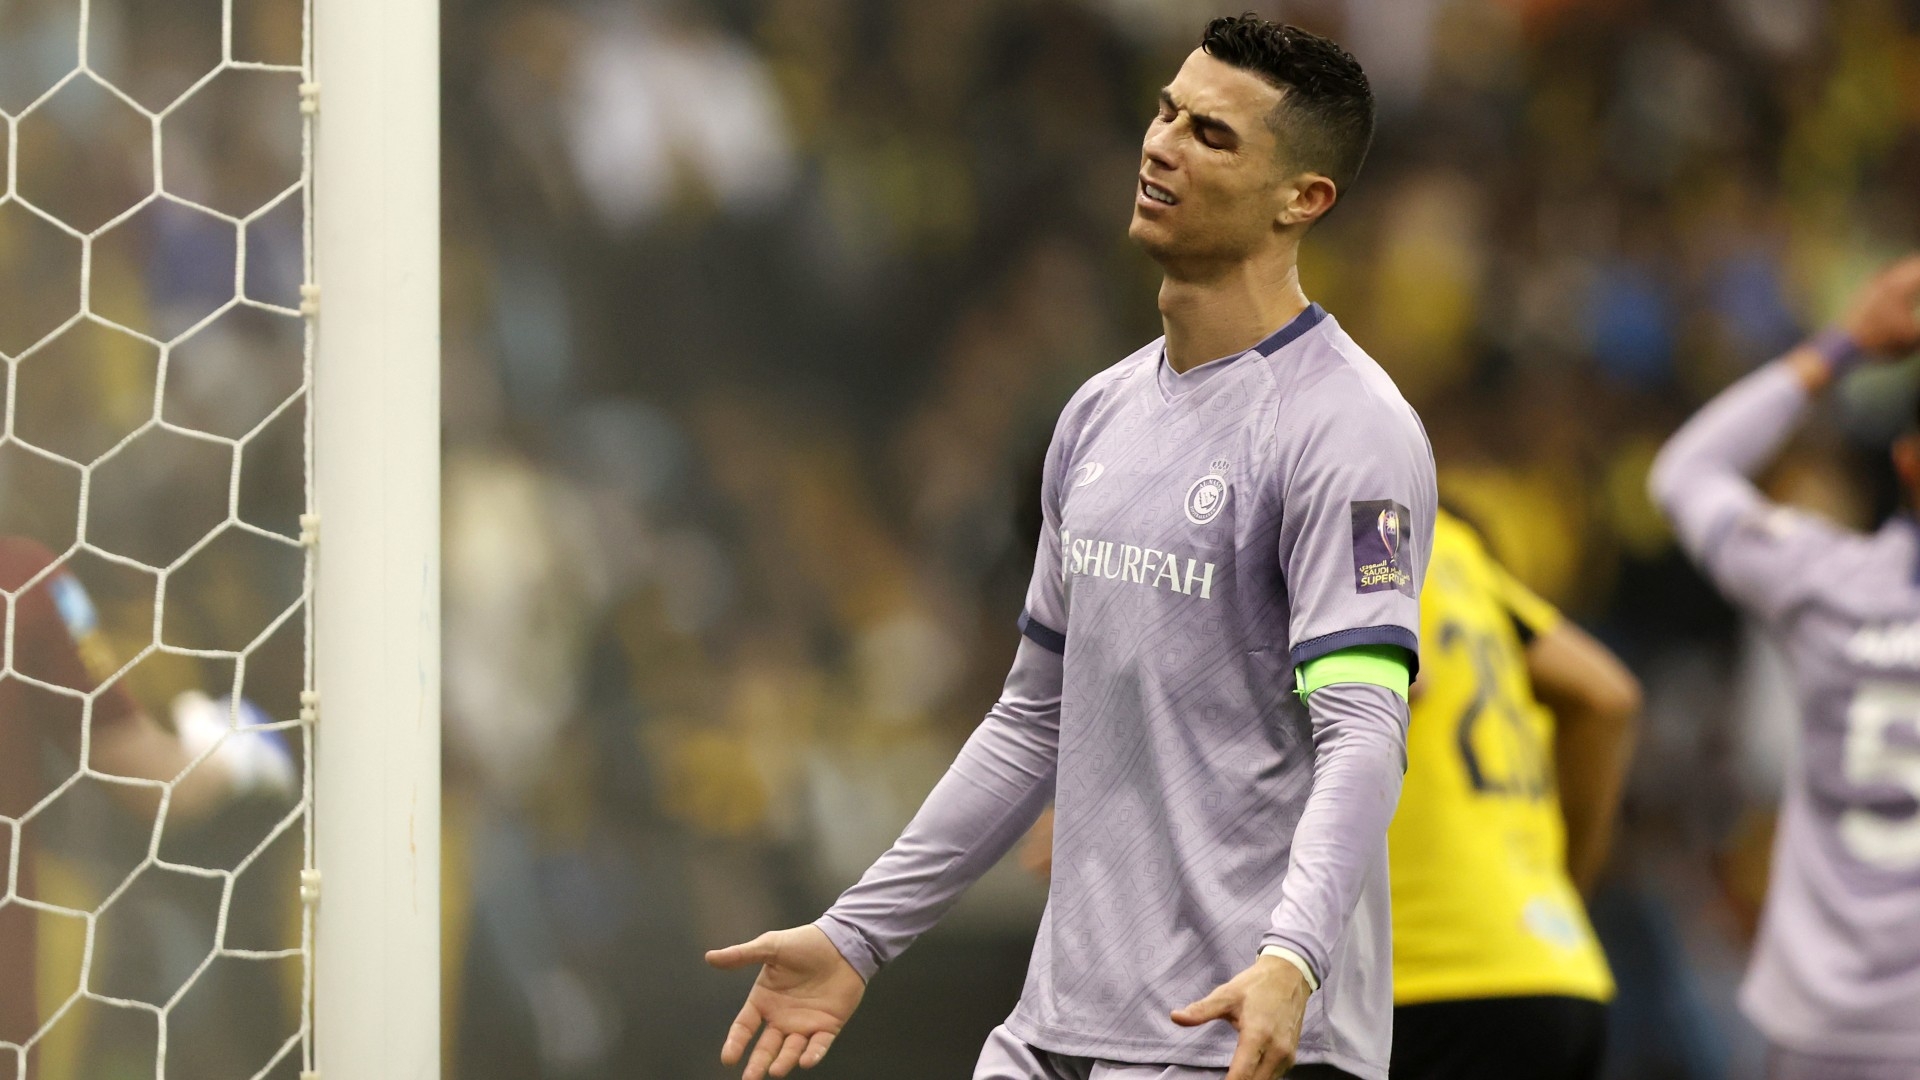 Drejtuesit e klubit nuk janë të kënaqur me Ronaldon